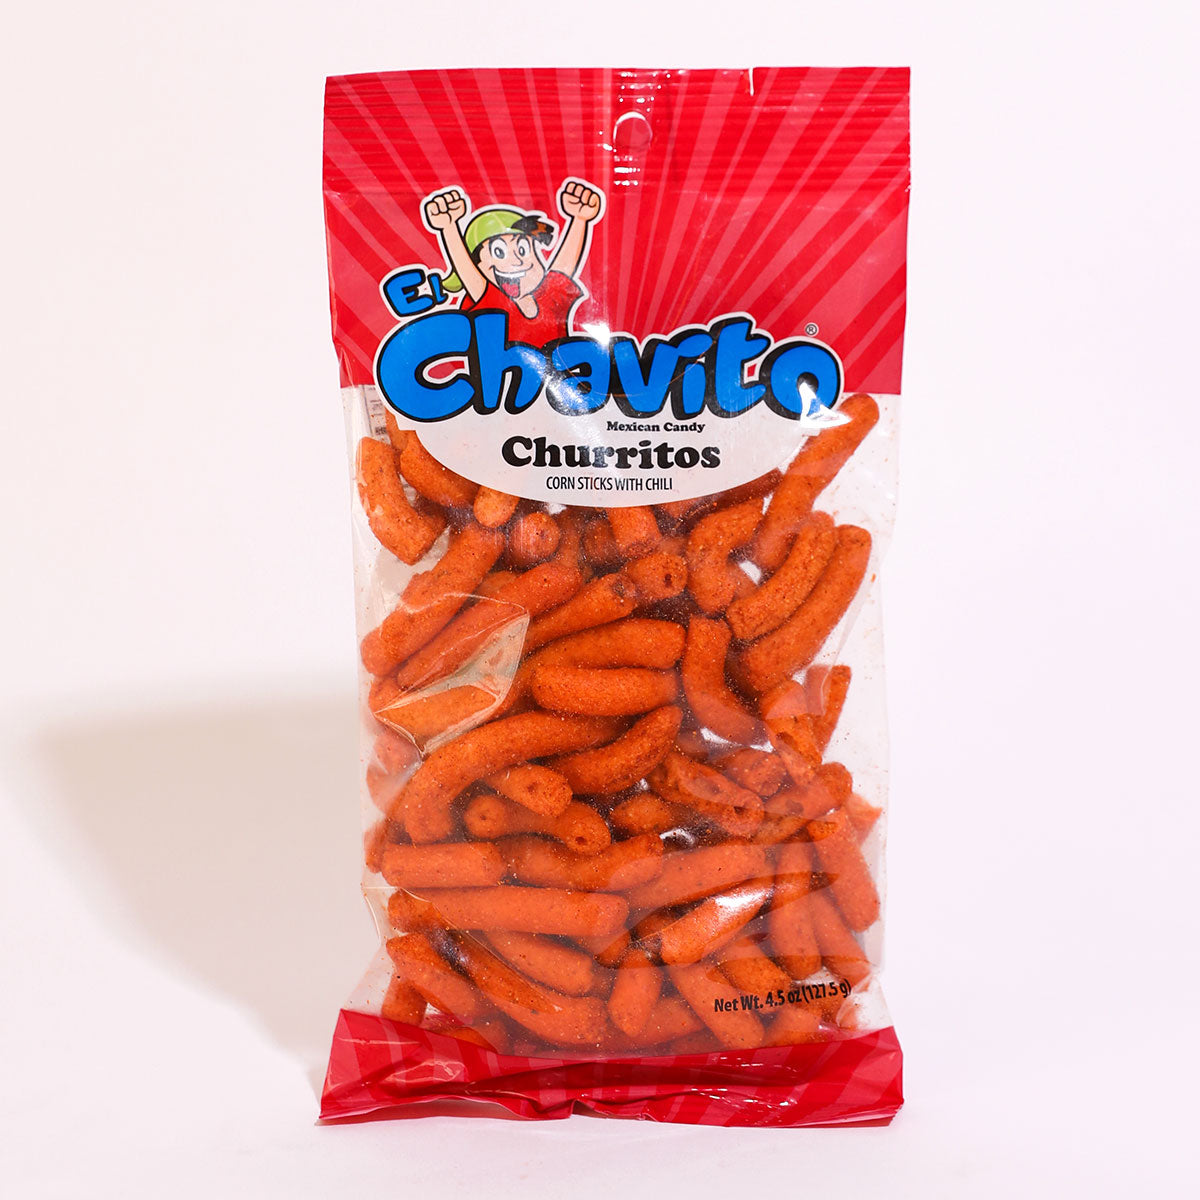 El Chavito: Churritos